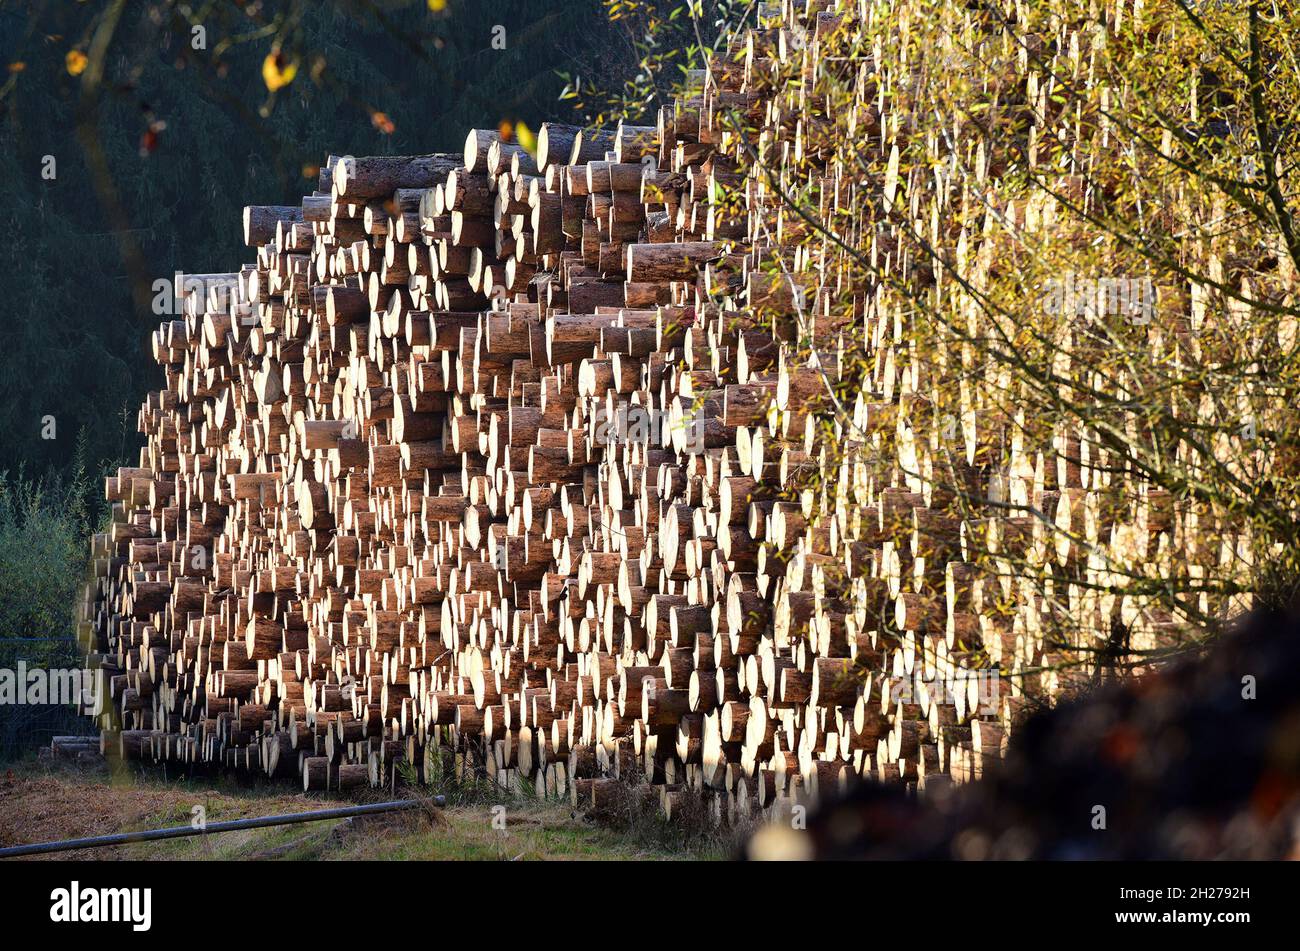 Holzstoß mit großen Baumstämmen in Österreich, Europa - Pile of wood with large tree trunks in Austria, Europe Stock Photo